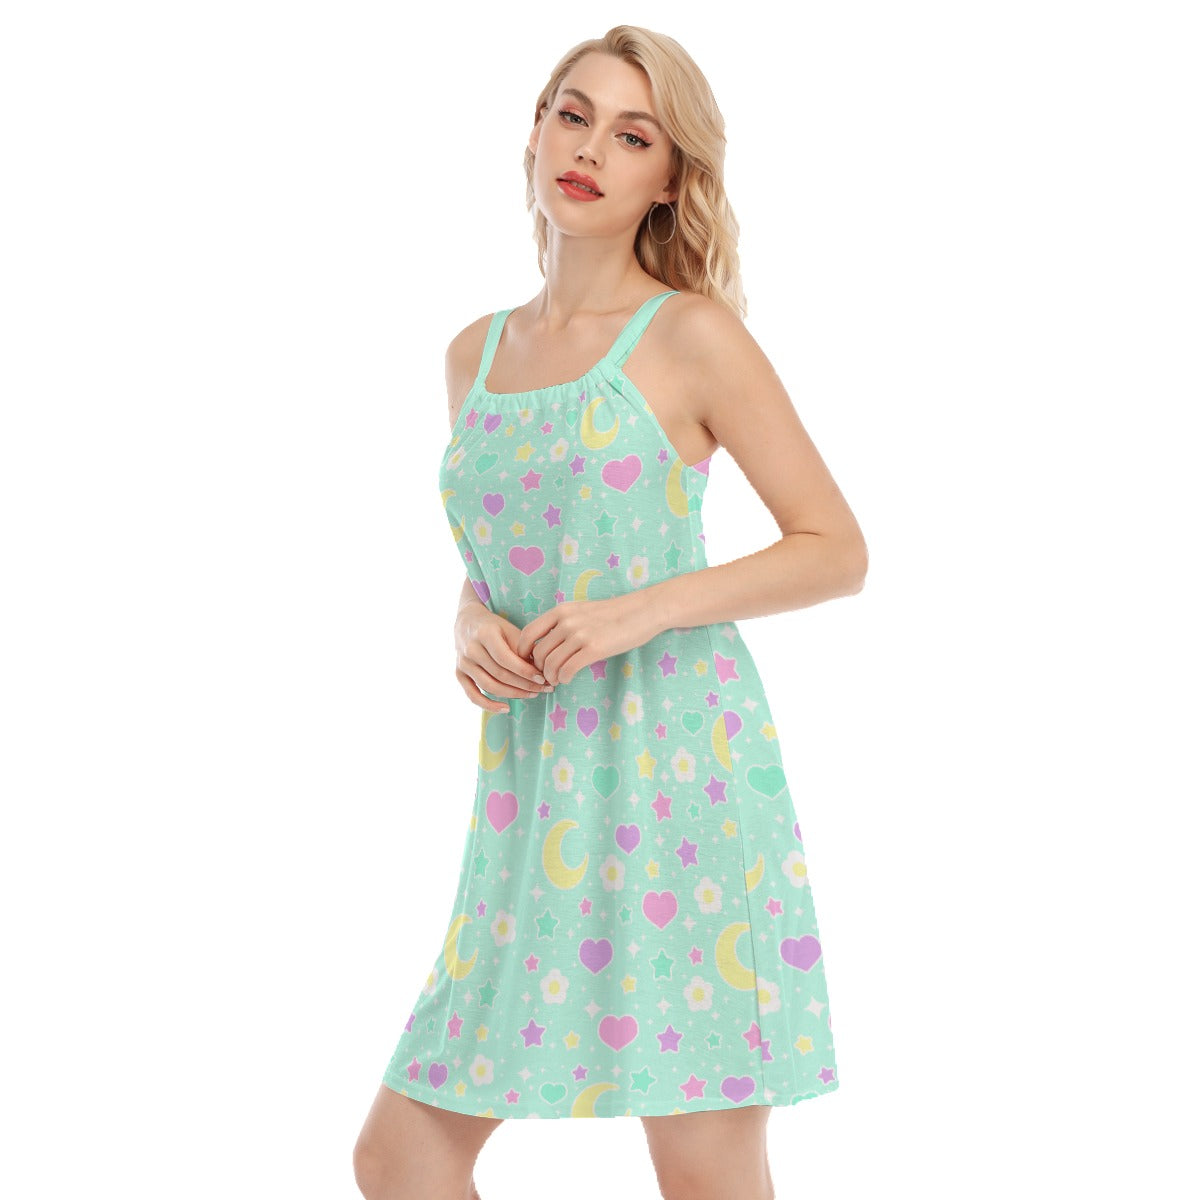 Magical Spring Mint Women's Sleeveless Cami Dress